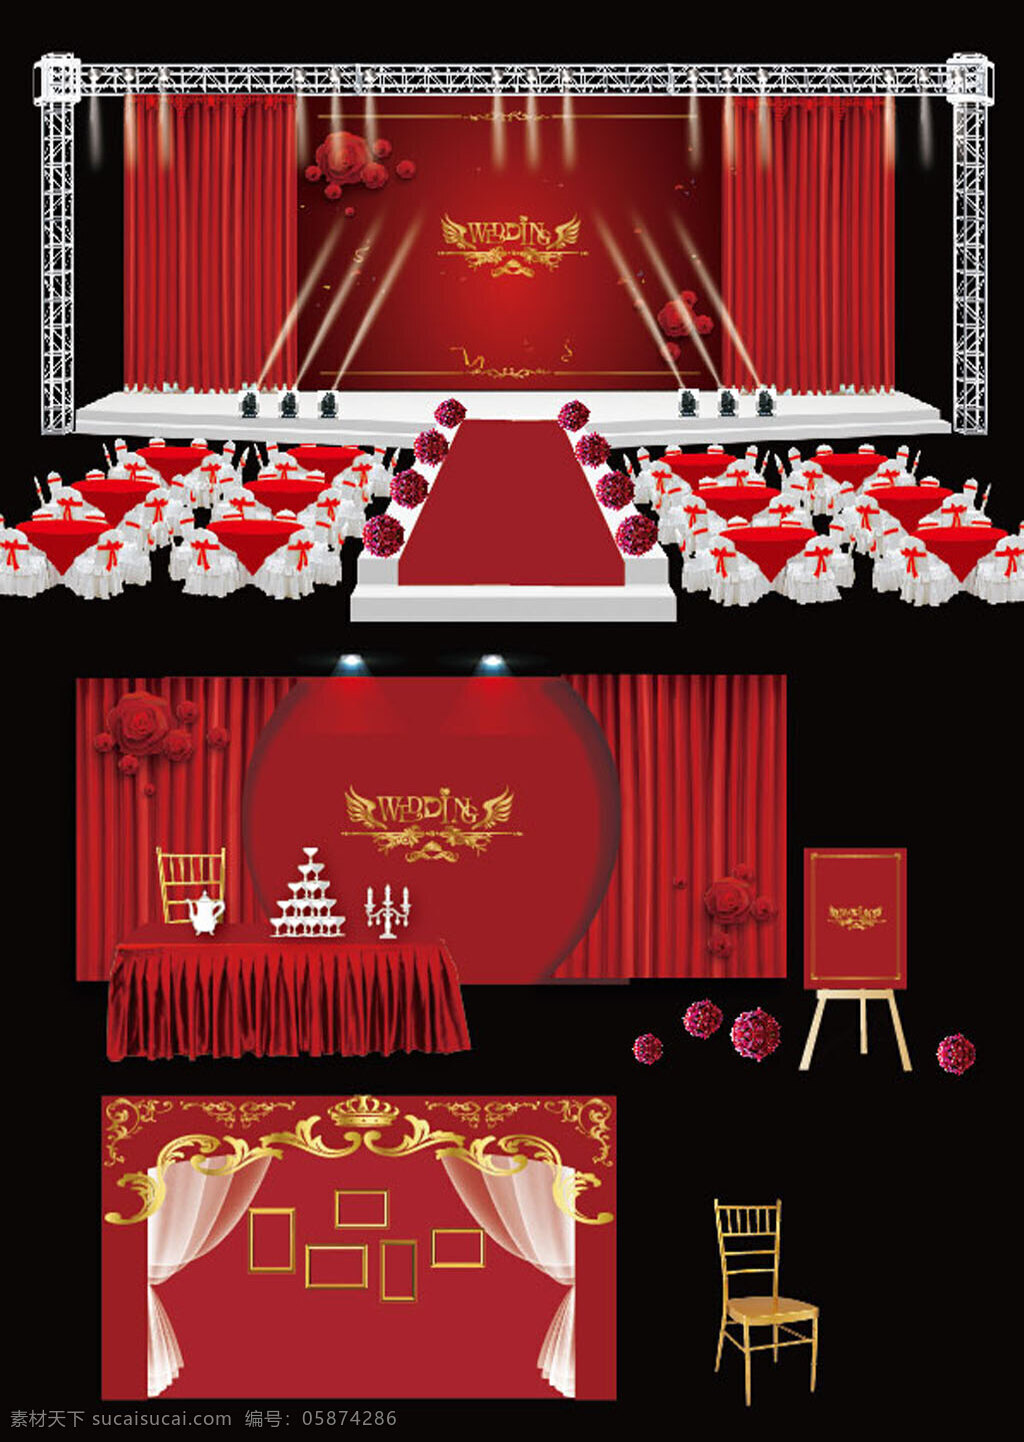 红色 婚礼 舞台 效果图 婚礼舞台 大气 时尚 婚礼设计 灯光 甜品台 照片墙